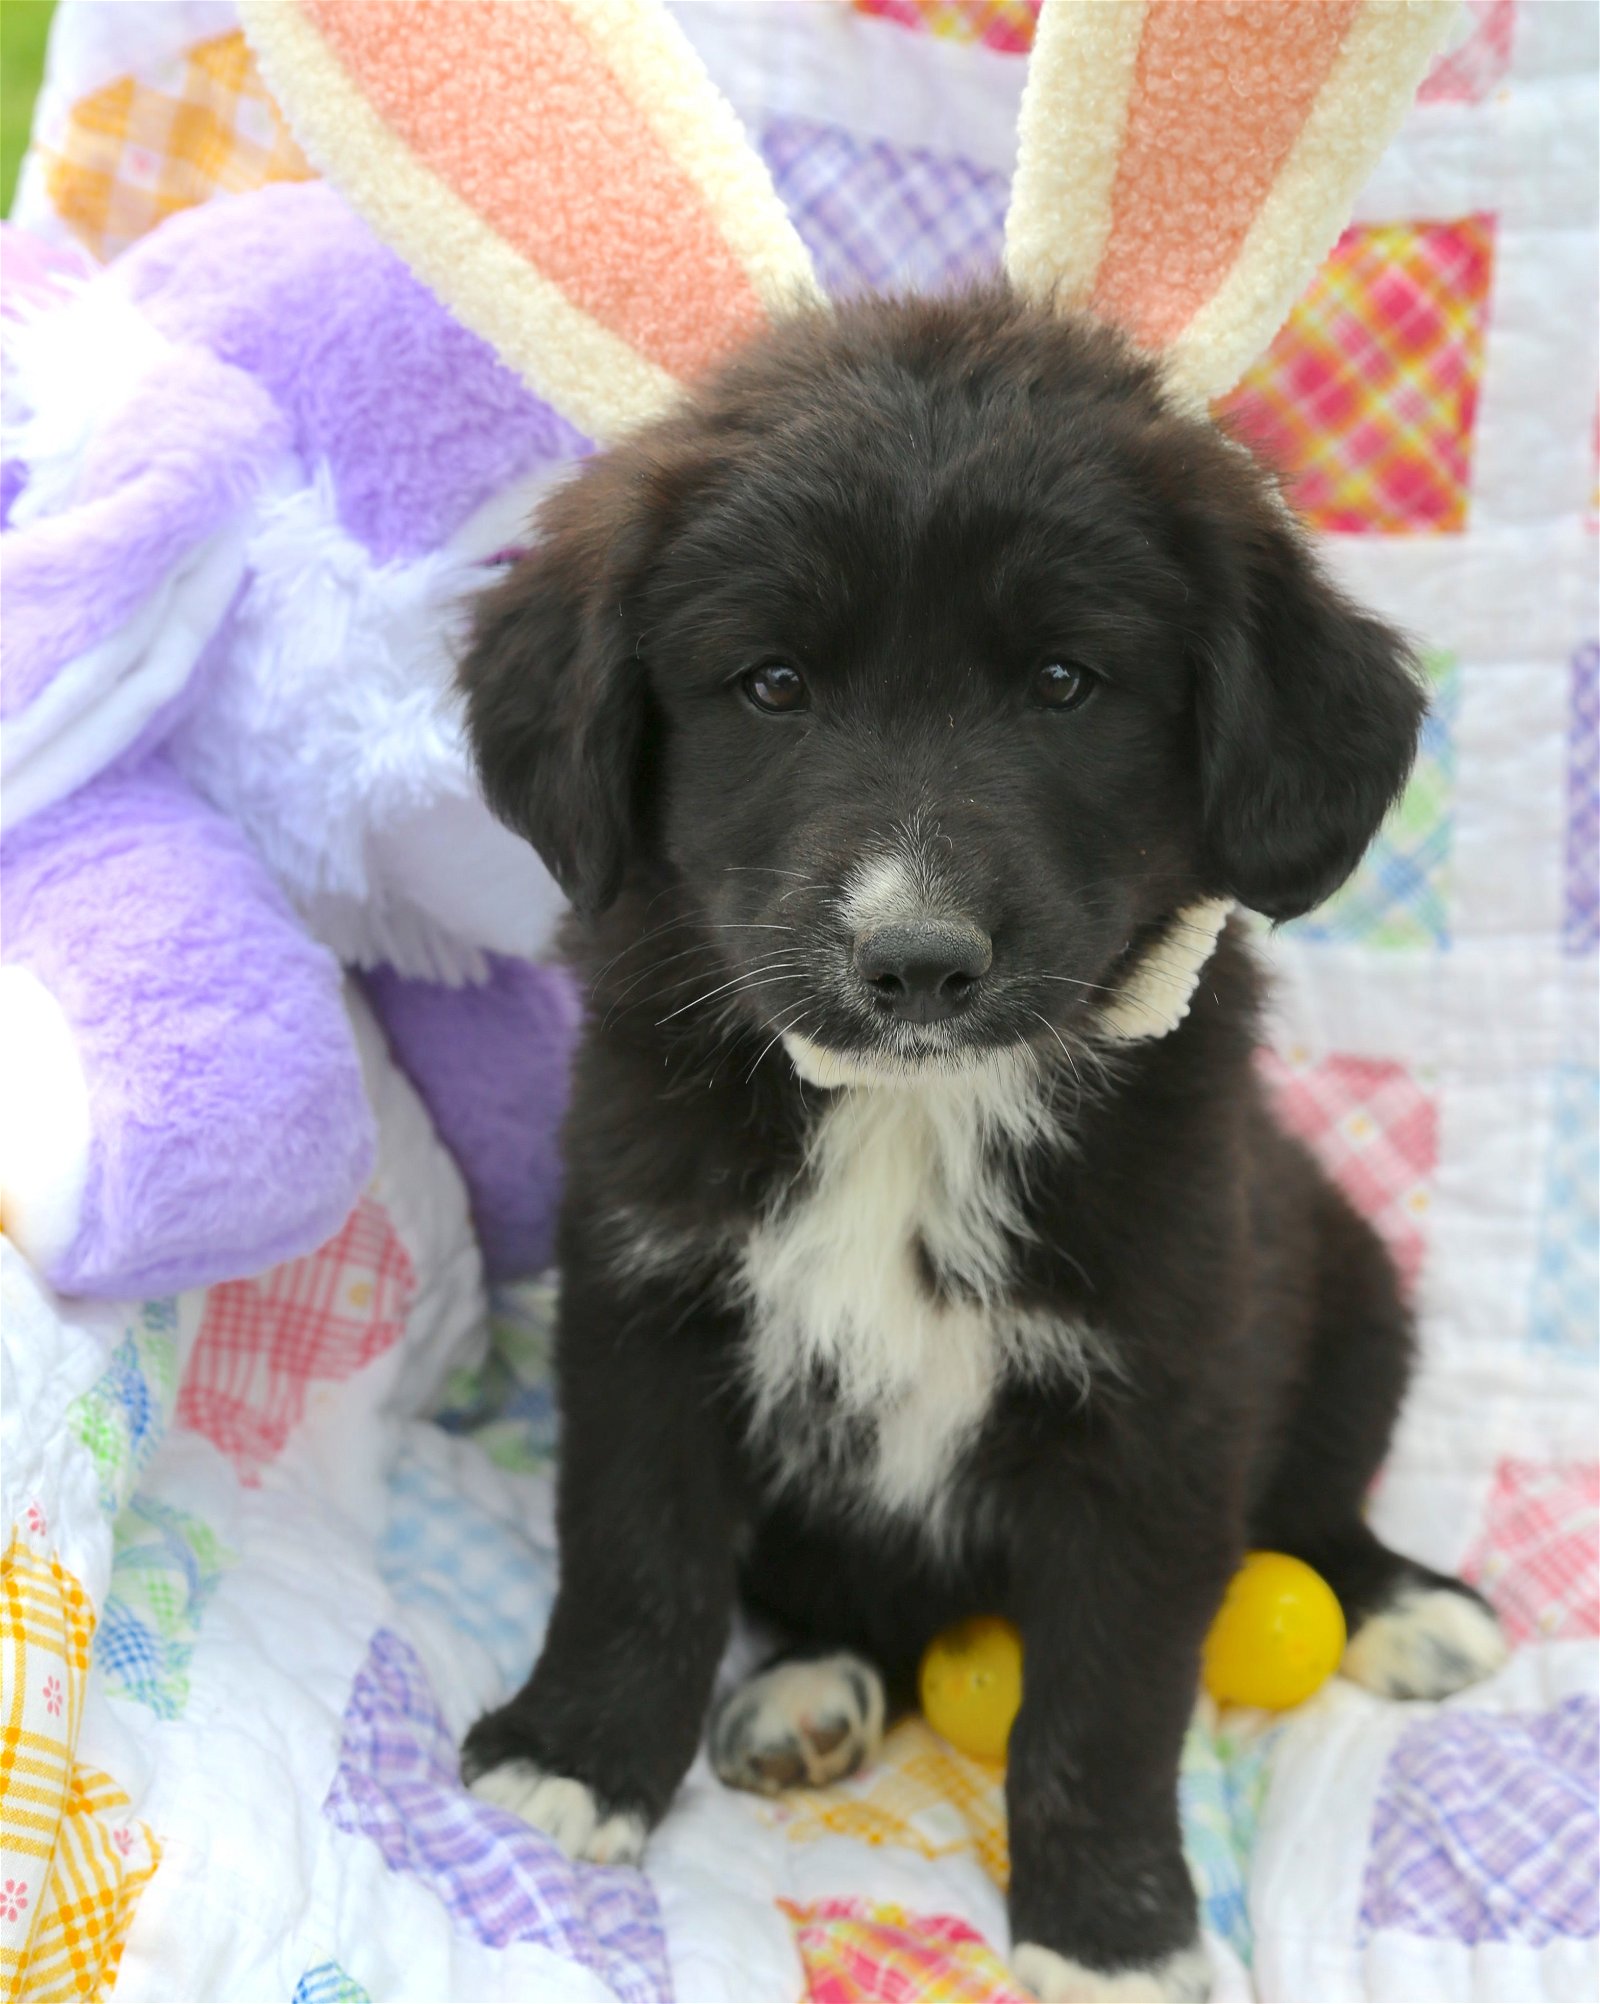 adoptable Dog in Warwick, RI named Cadbury Easter